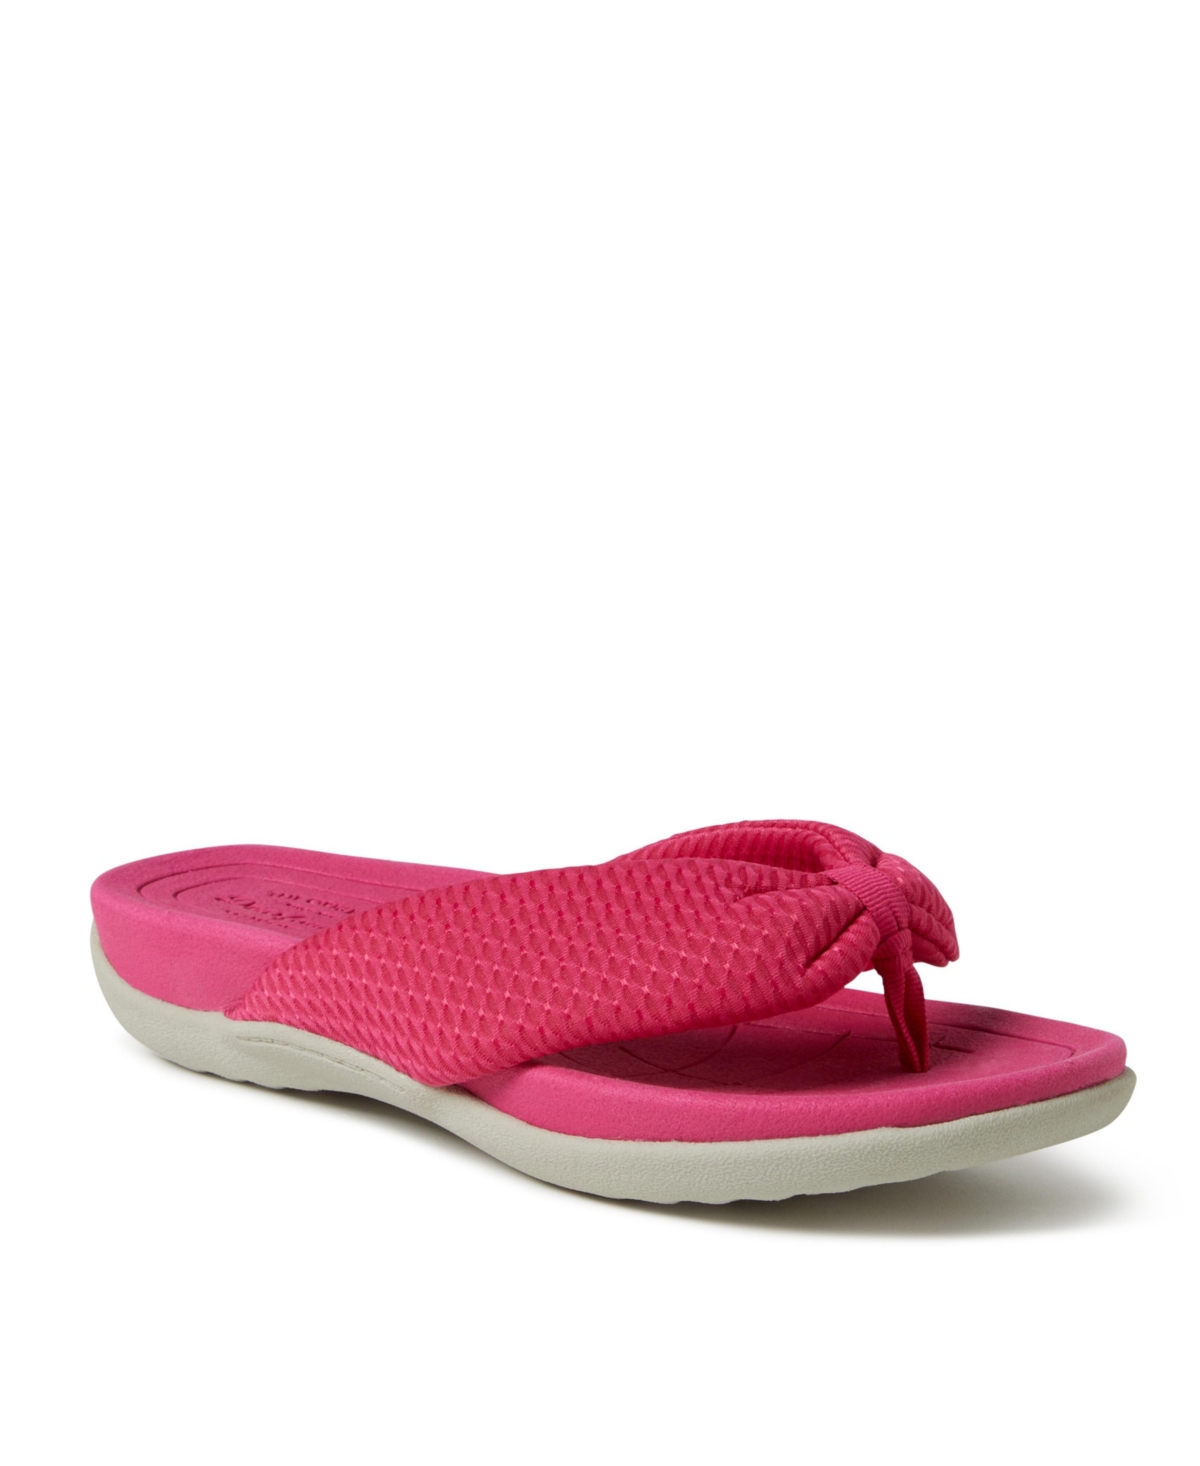 Dear foams Women's Low Foam Thong Sandal - Pink